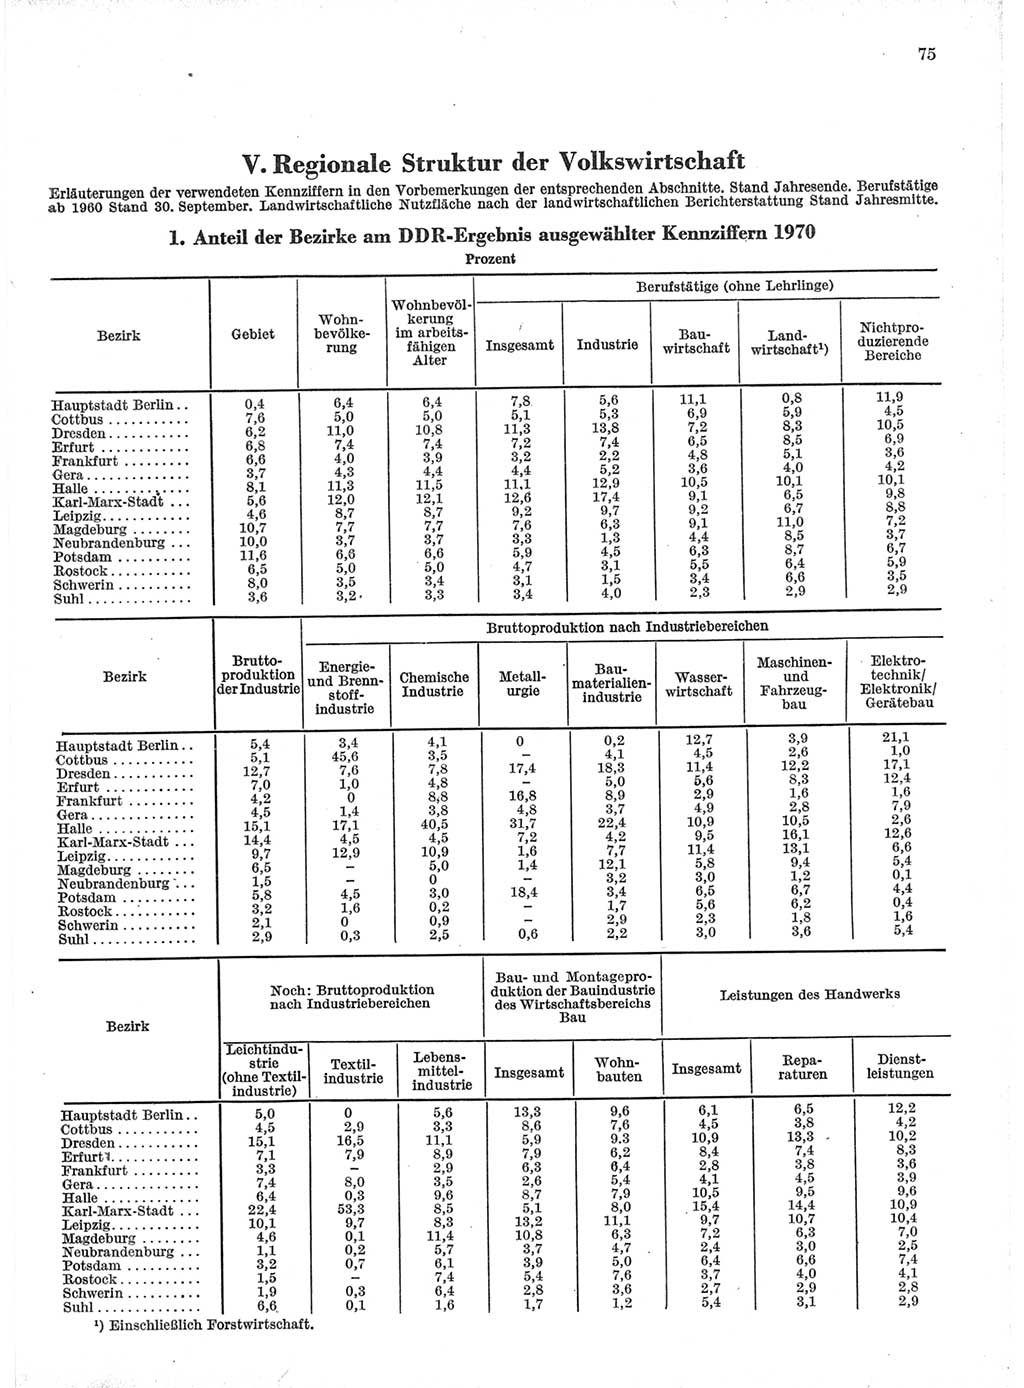 Statistisches Jahrbuch der Deutschen Demokratischen Republik (DDR) 1971, Seite 75 (Stat. Jb. DDR 1971, S. 75)